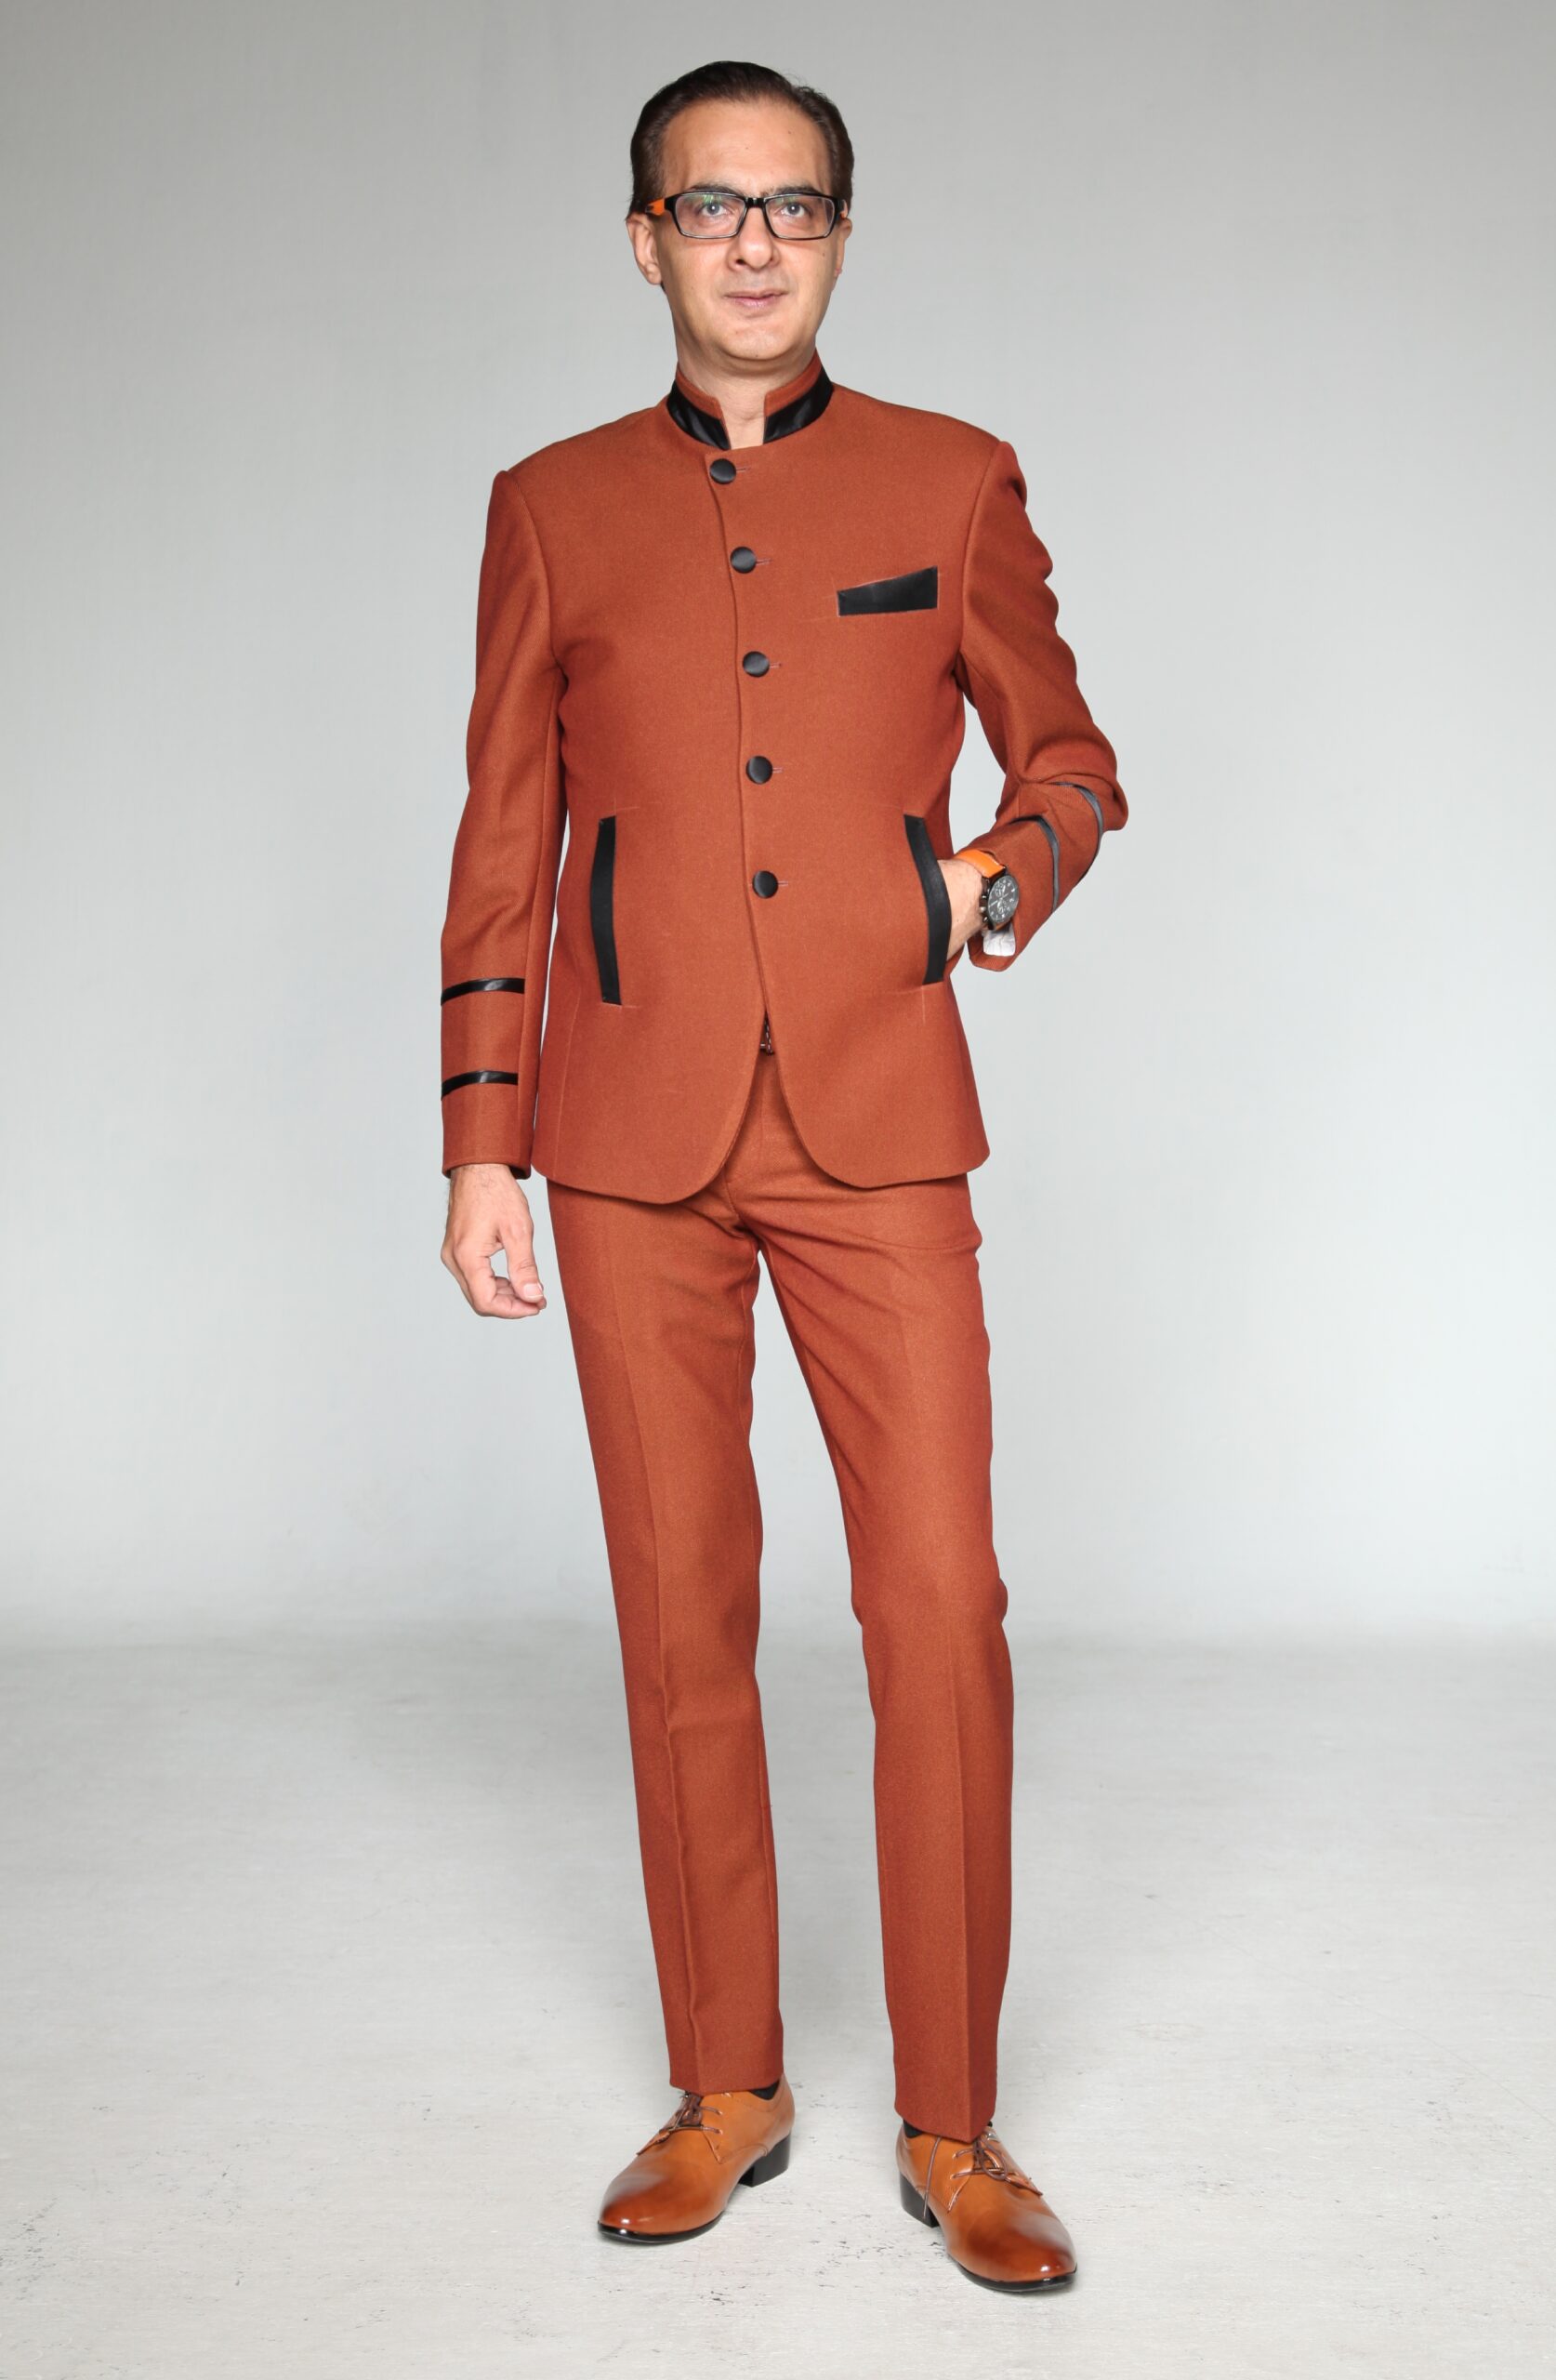 MST-5036-02-rent_rental_hire_tuxedo_suit_black_tie_suit_designer_suits_shop_tailor_tailors_singapore_wedding